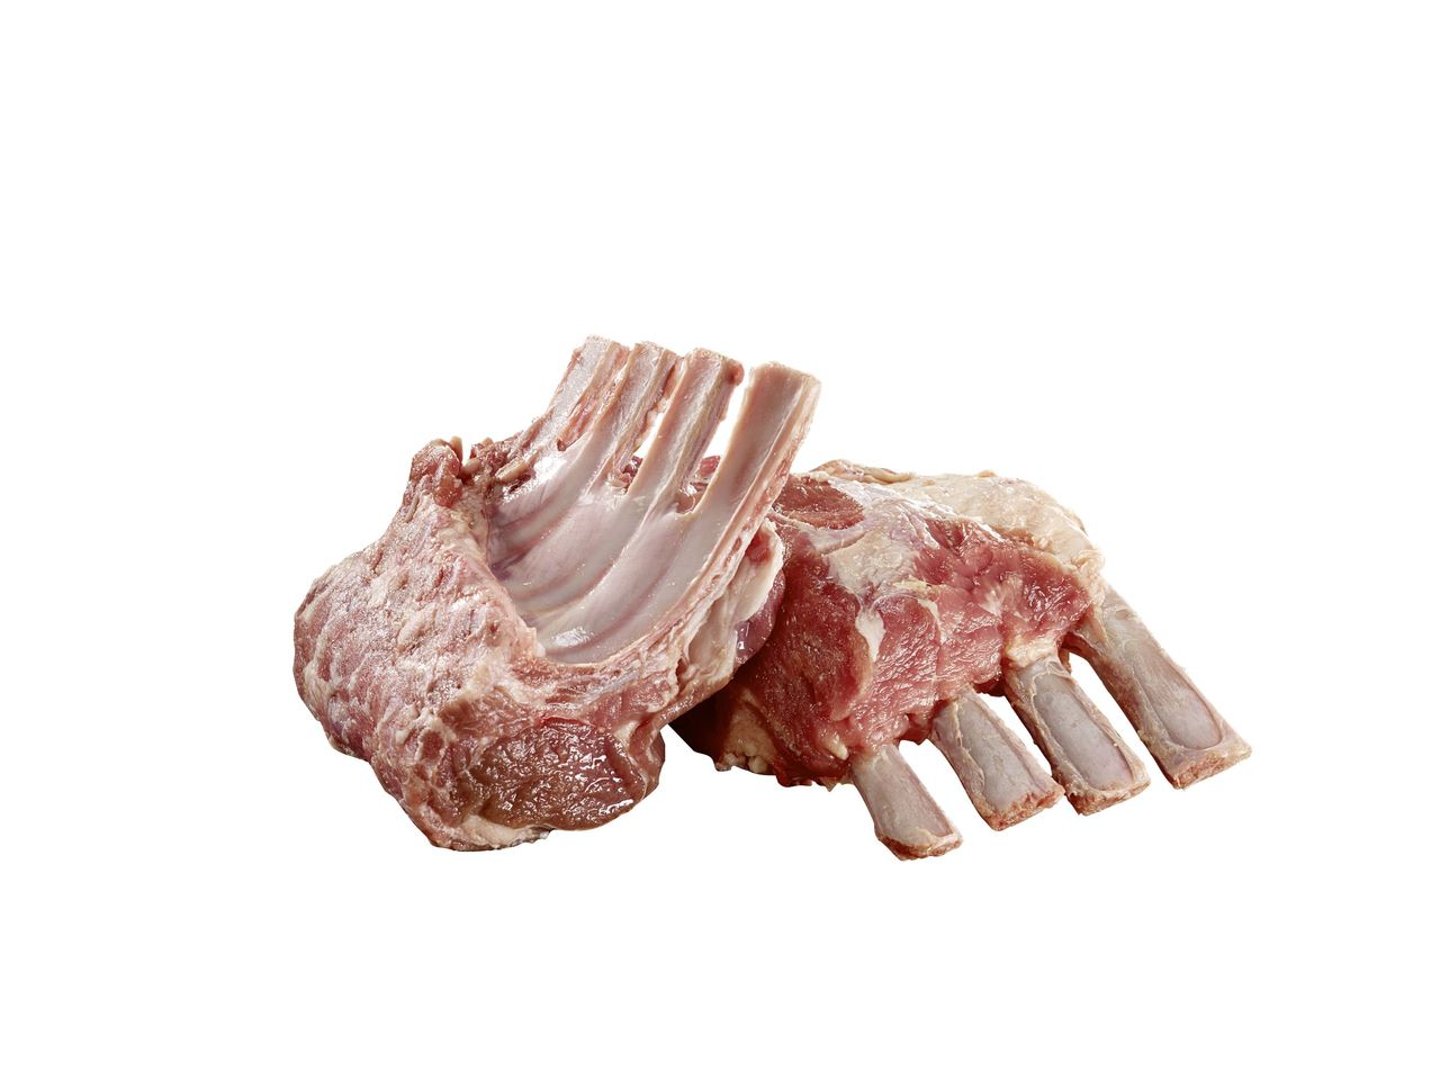 OVATION - Lamm-Nacken-Karree tiefgefroren, 2 Stück à ca. 300 g mit Knochen, aus Neuseeland, vak.-verpackt ca. 600 g